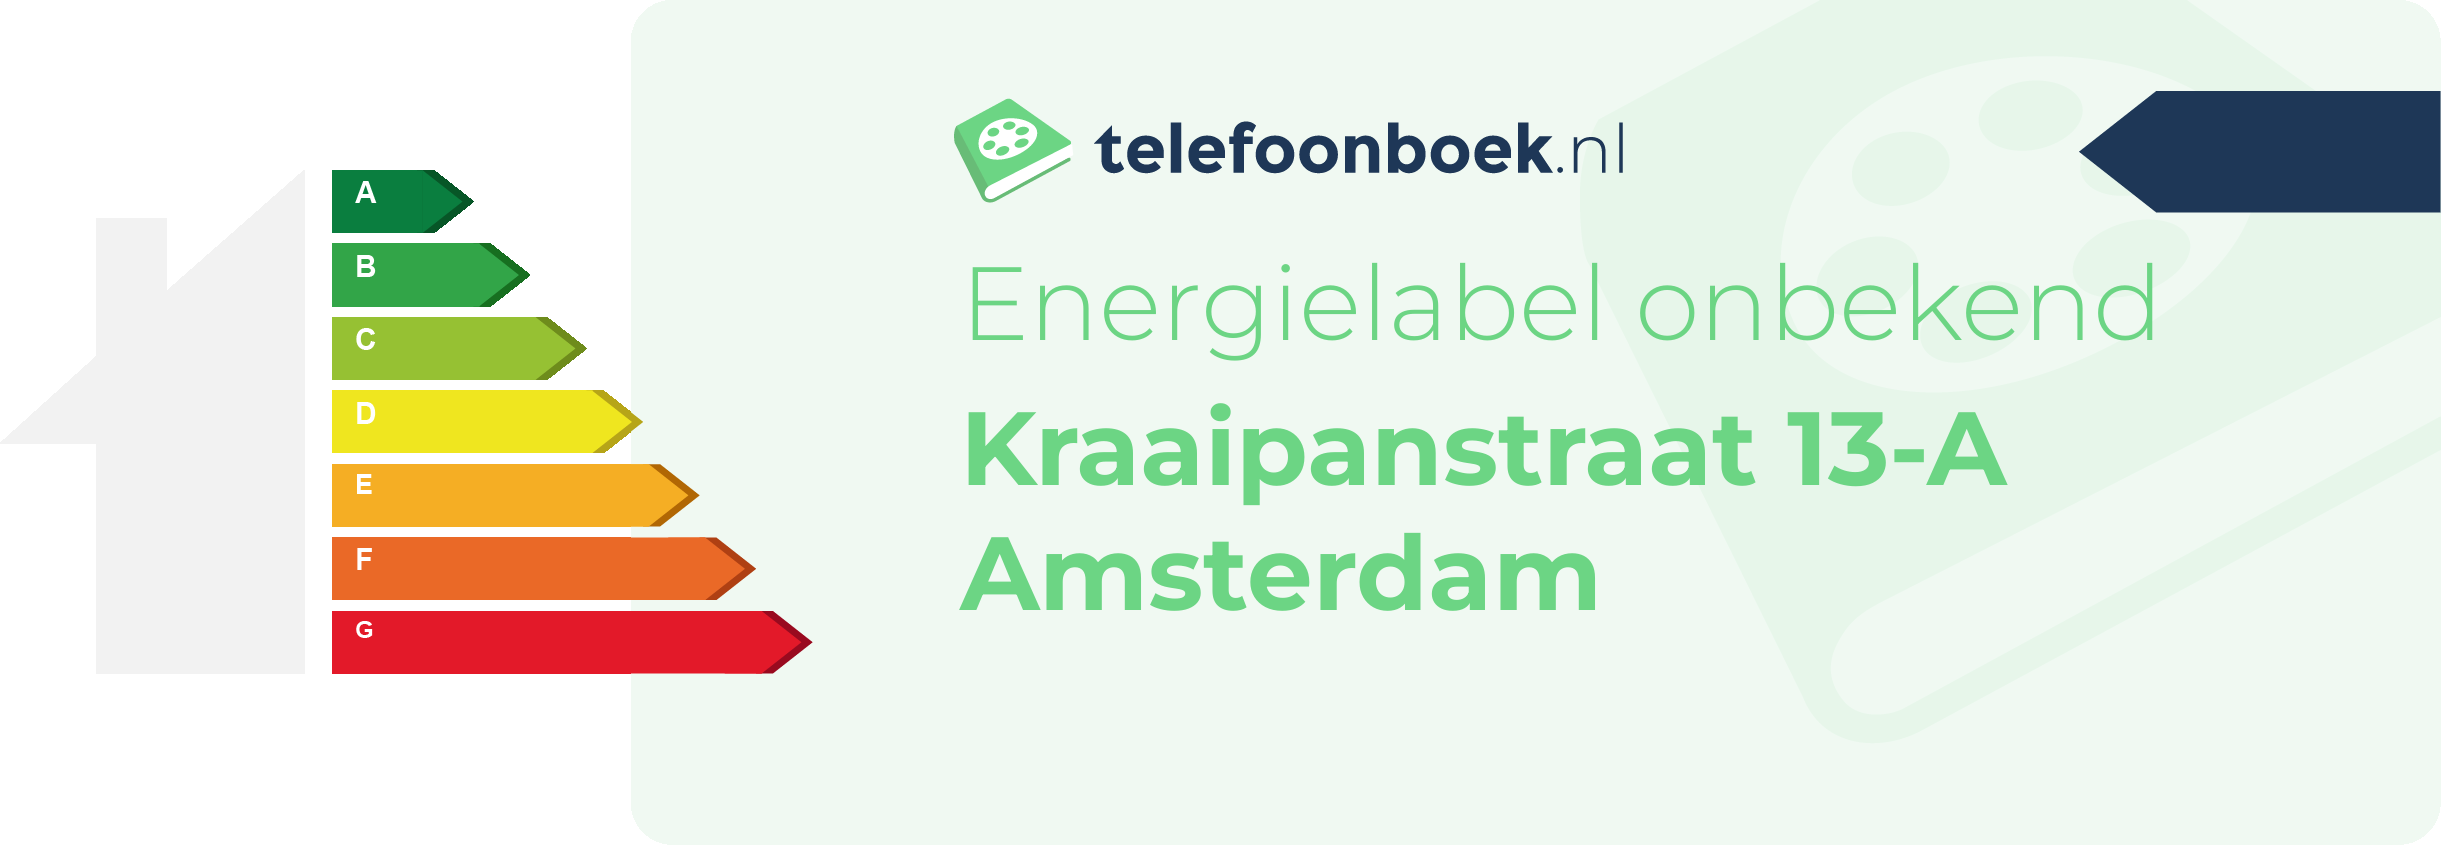 Energielabel Kraaipanstraat 13-A Amsterdam